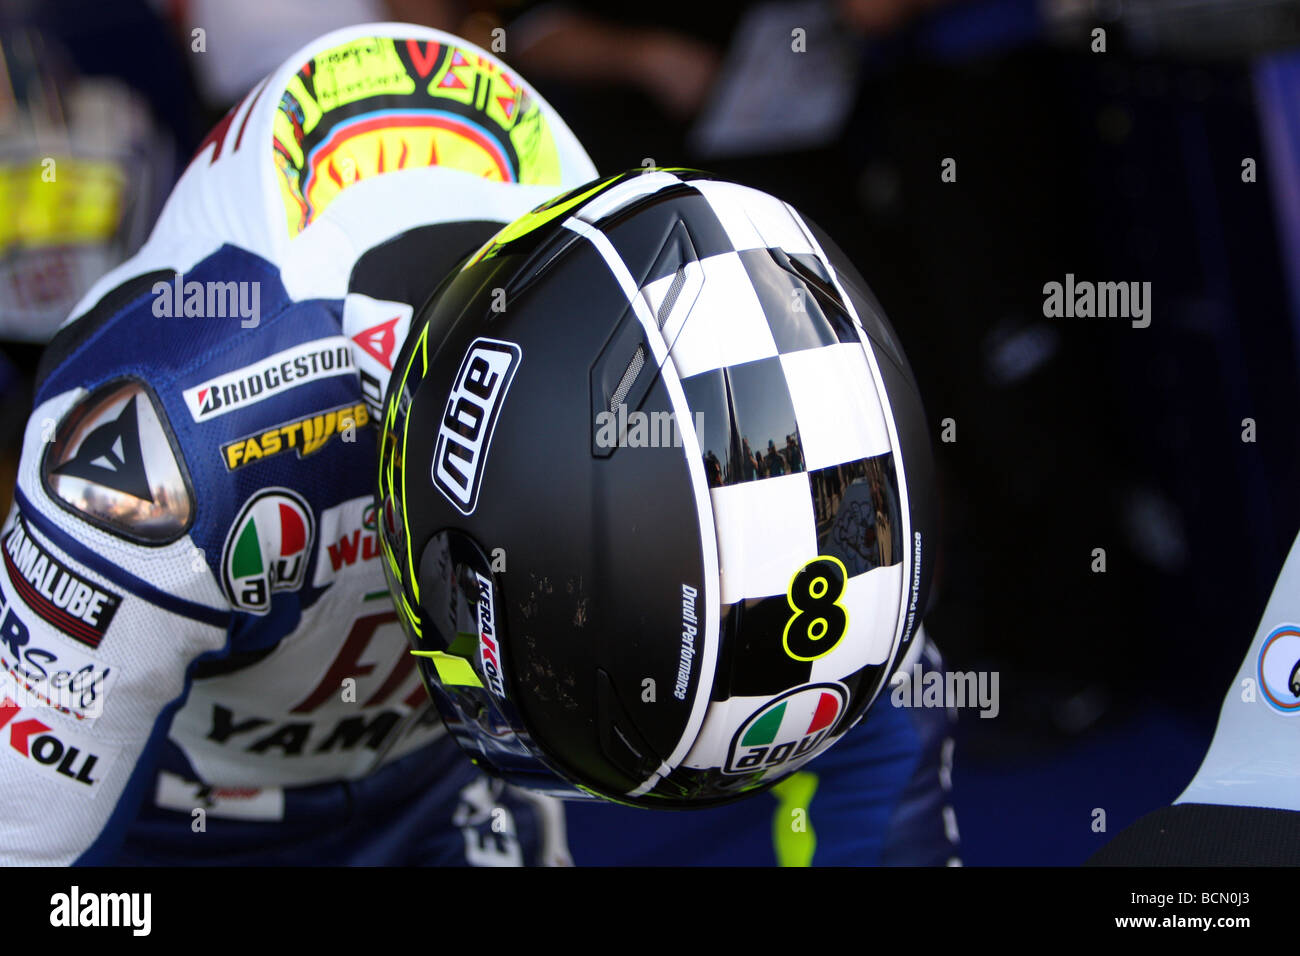 Valentino Rossi 46 der Arzt seine 8 Mal Weltmeister crash Helm tragen von Drudi entworfen Stockfoto